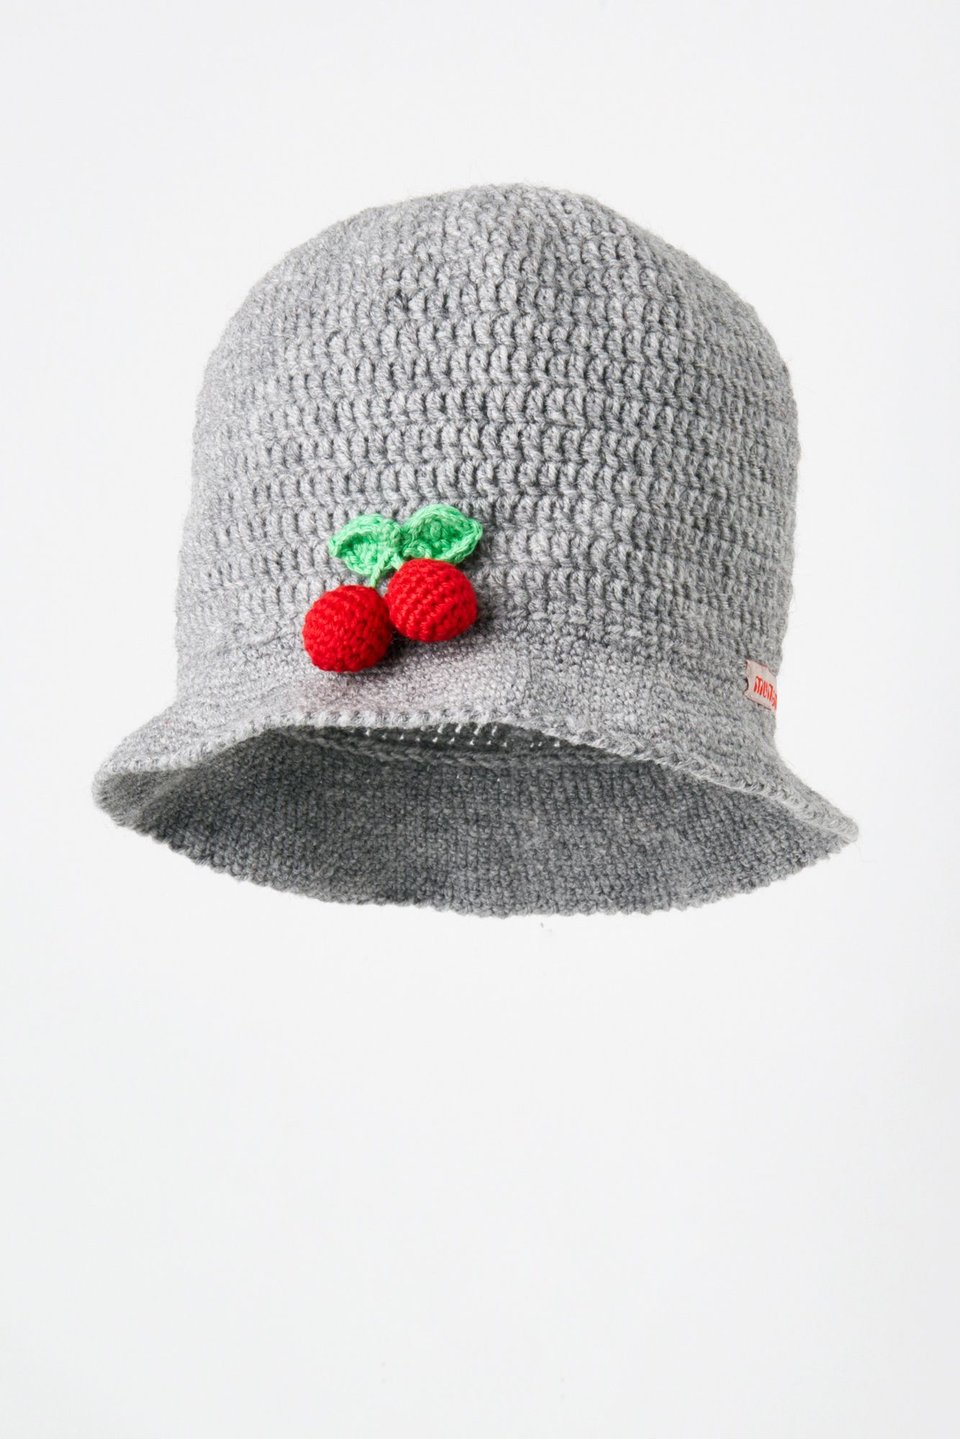 Cherry On Top Hat